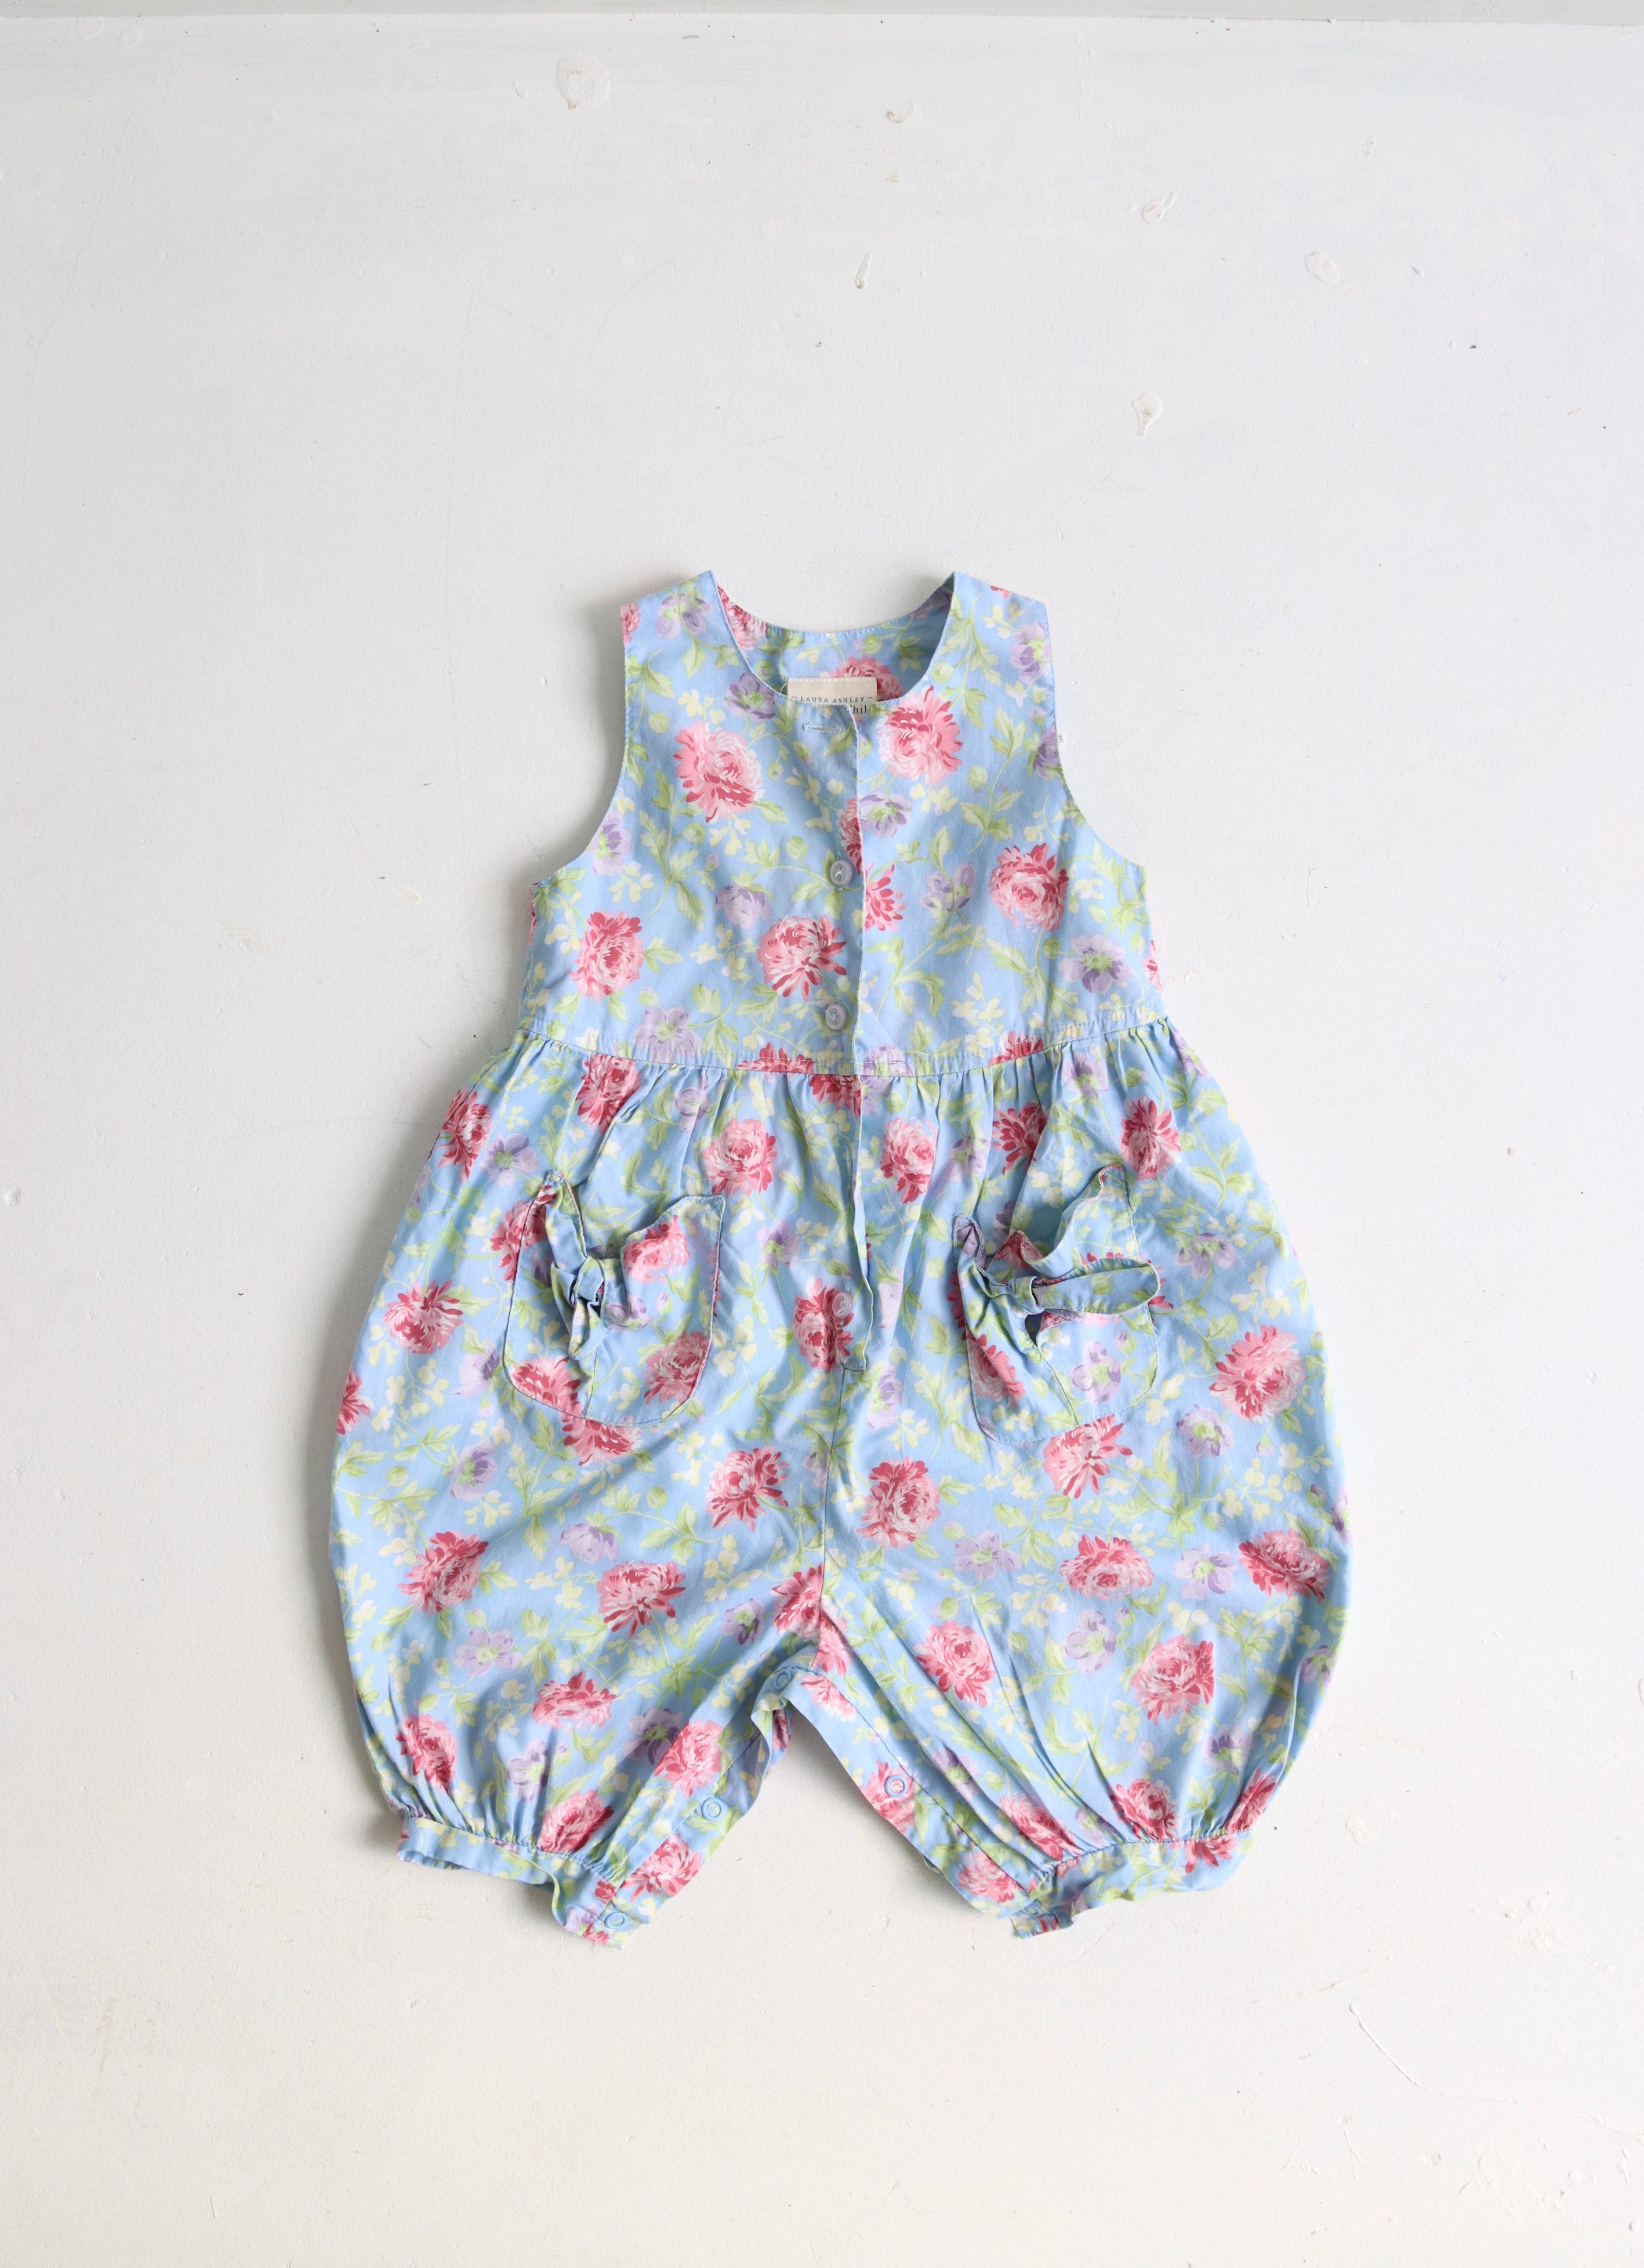 Vintage Laura Ashley floral jumpsuit - size 18 months